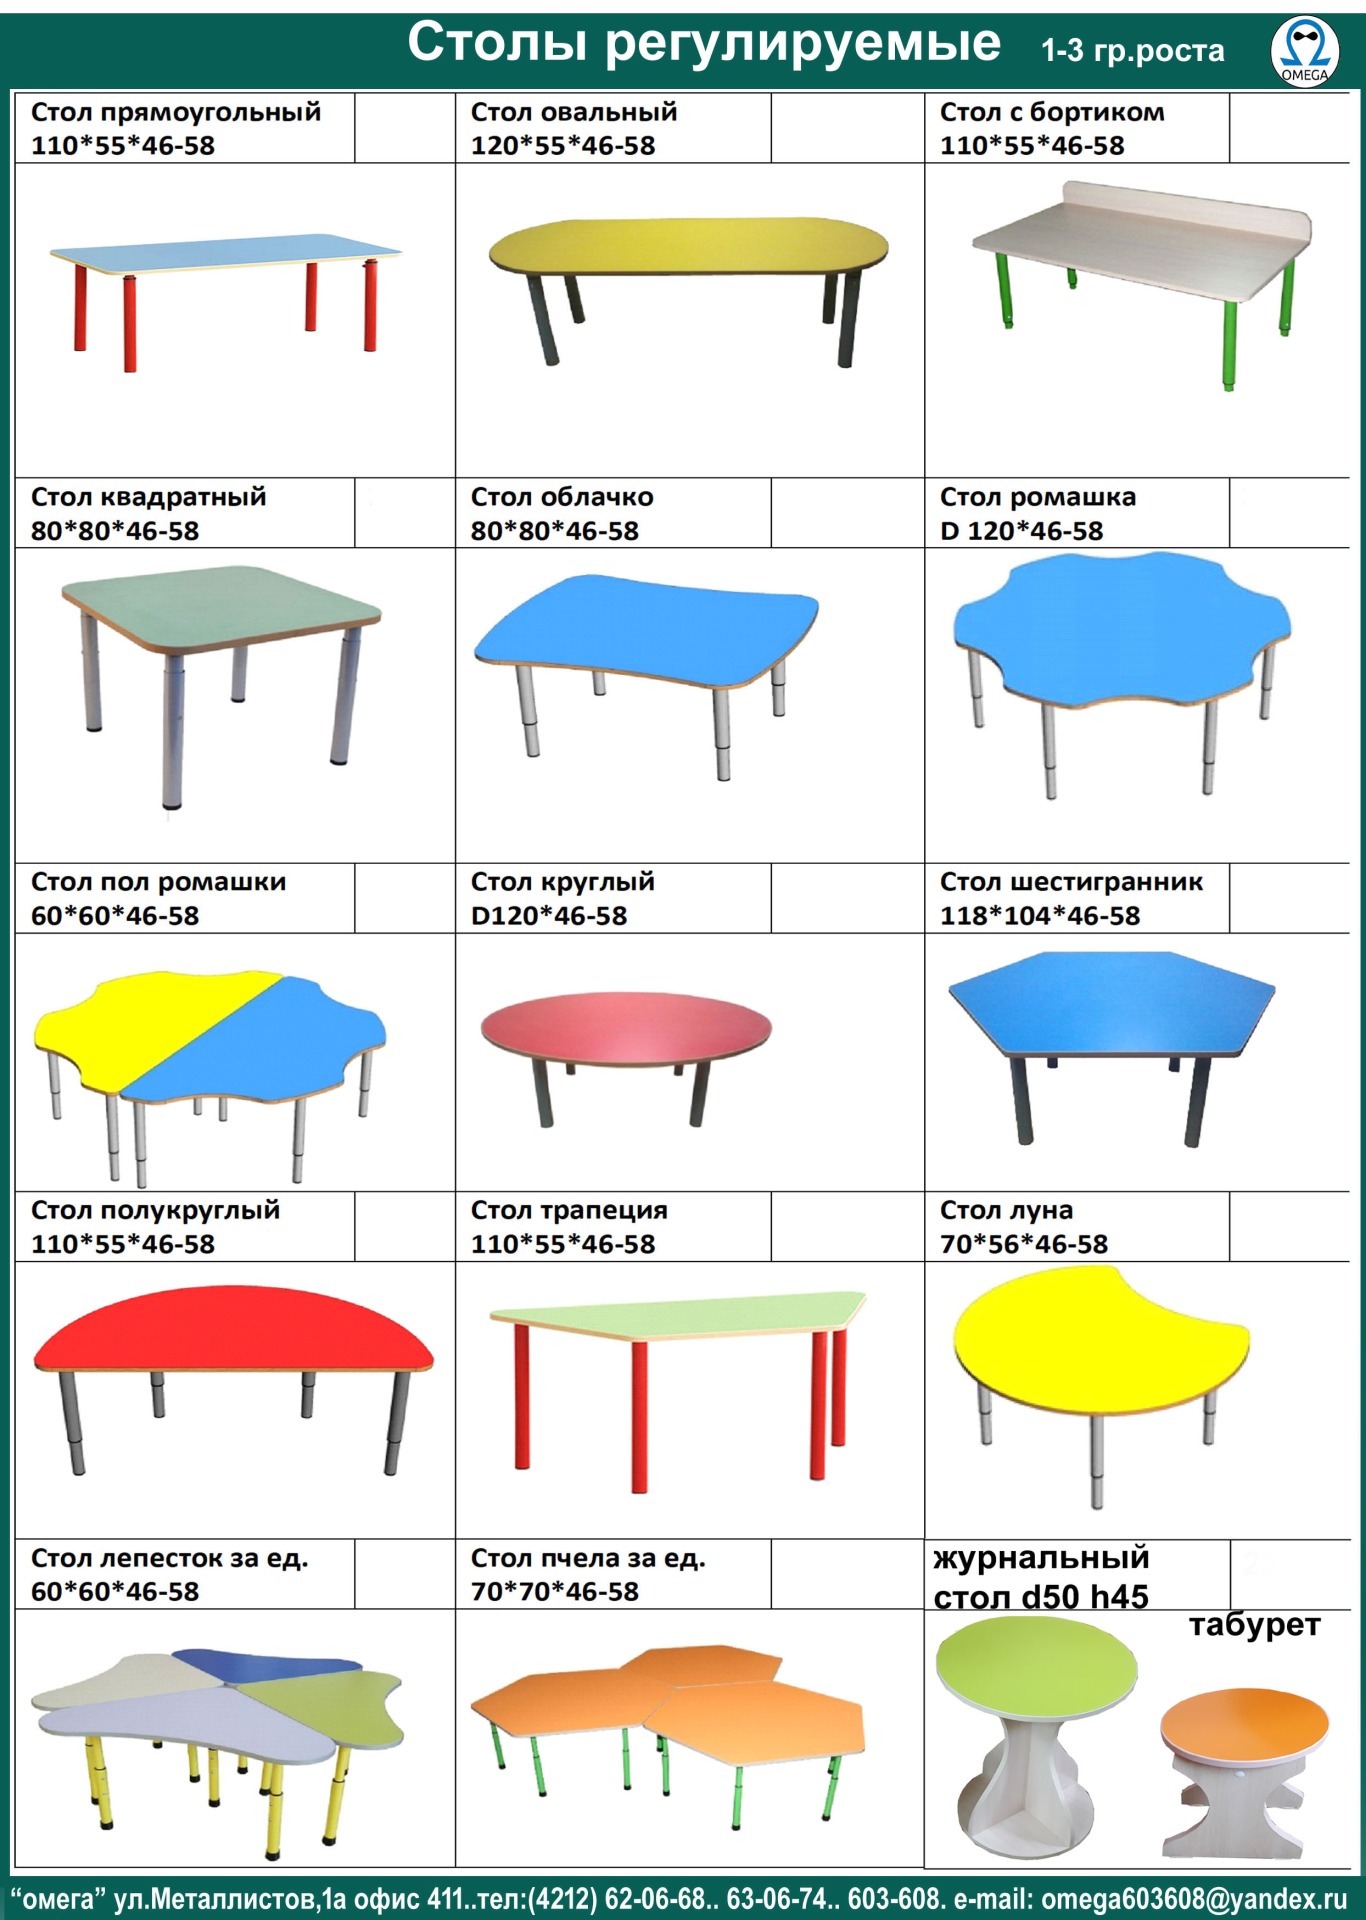 размеры стола для ребенка гост